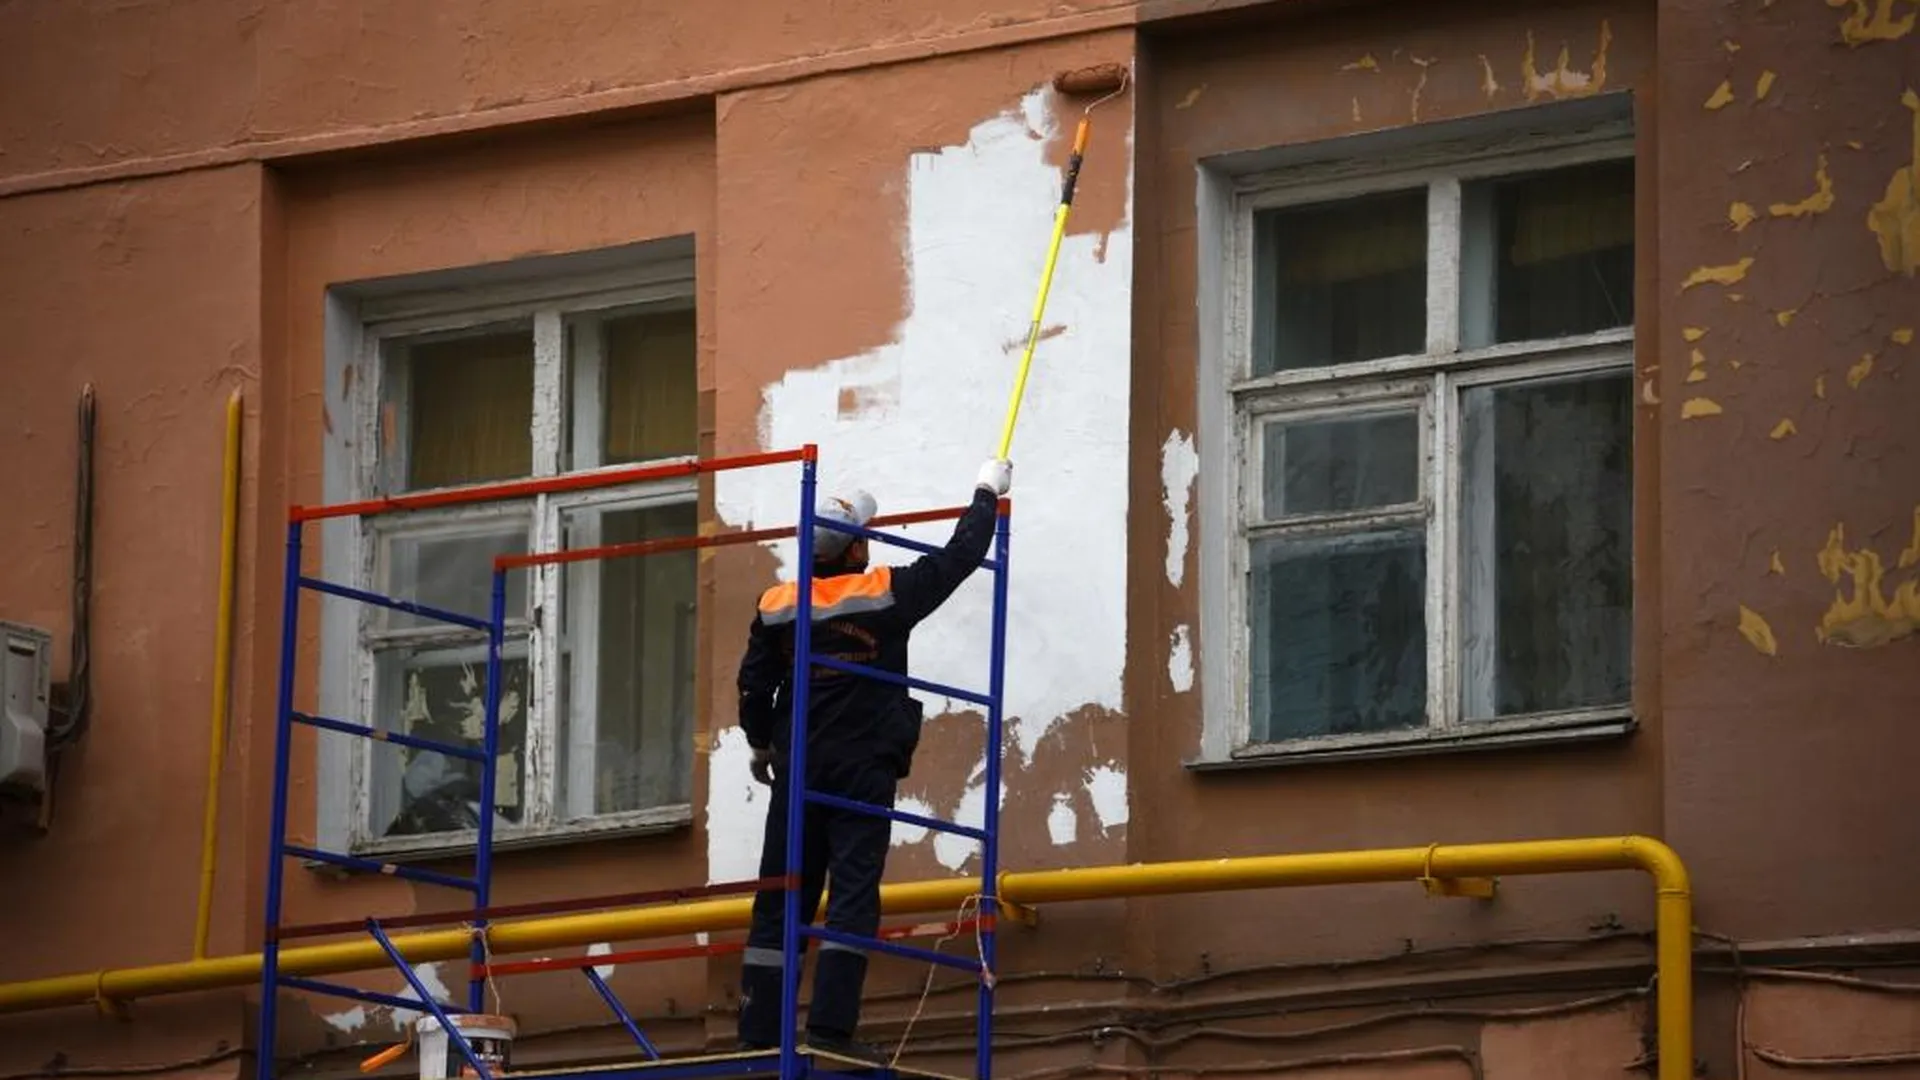 ОНФ поможет жителям добиться ремонта дома в Солнечногорске через прокуратуру